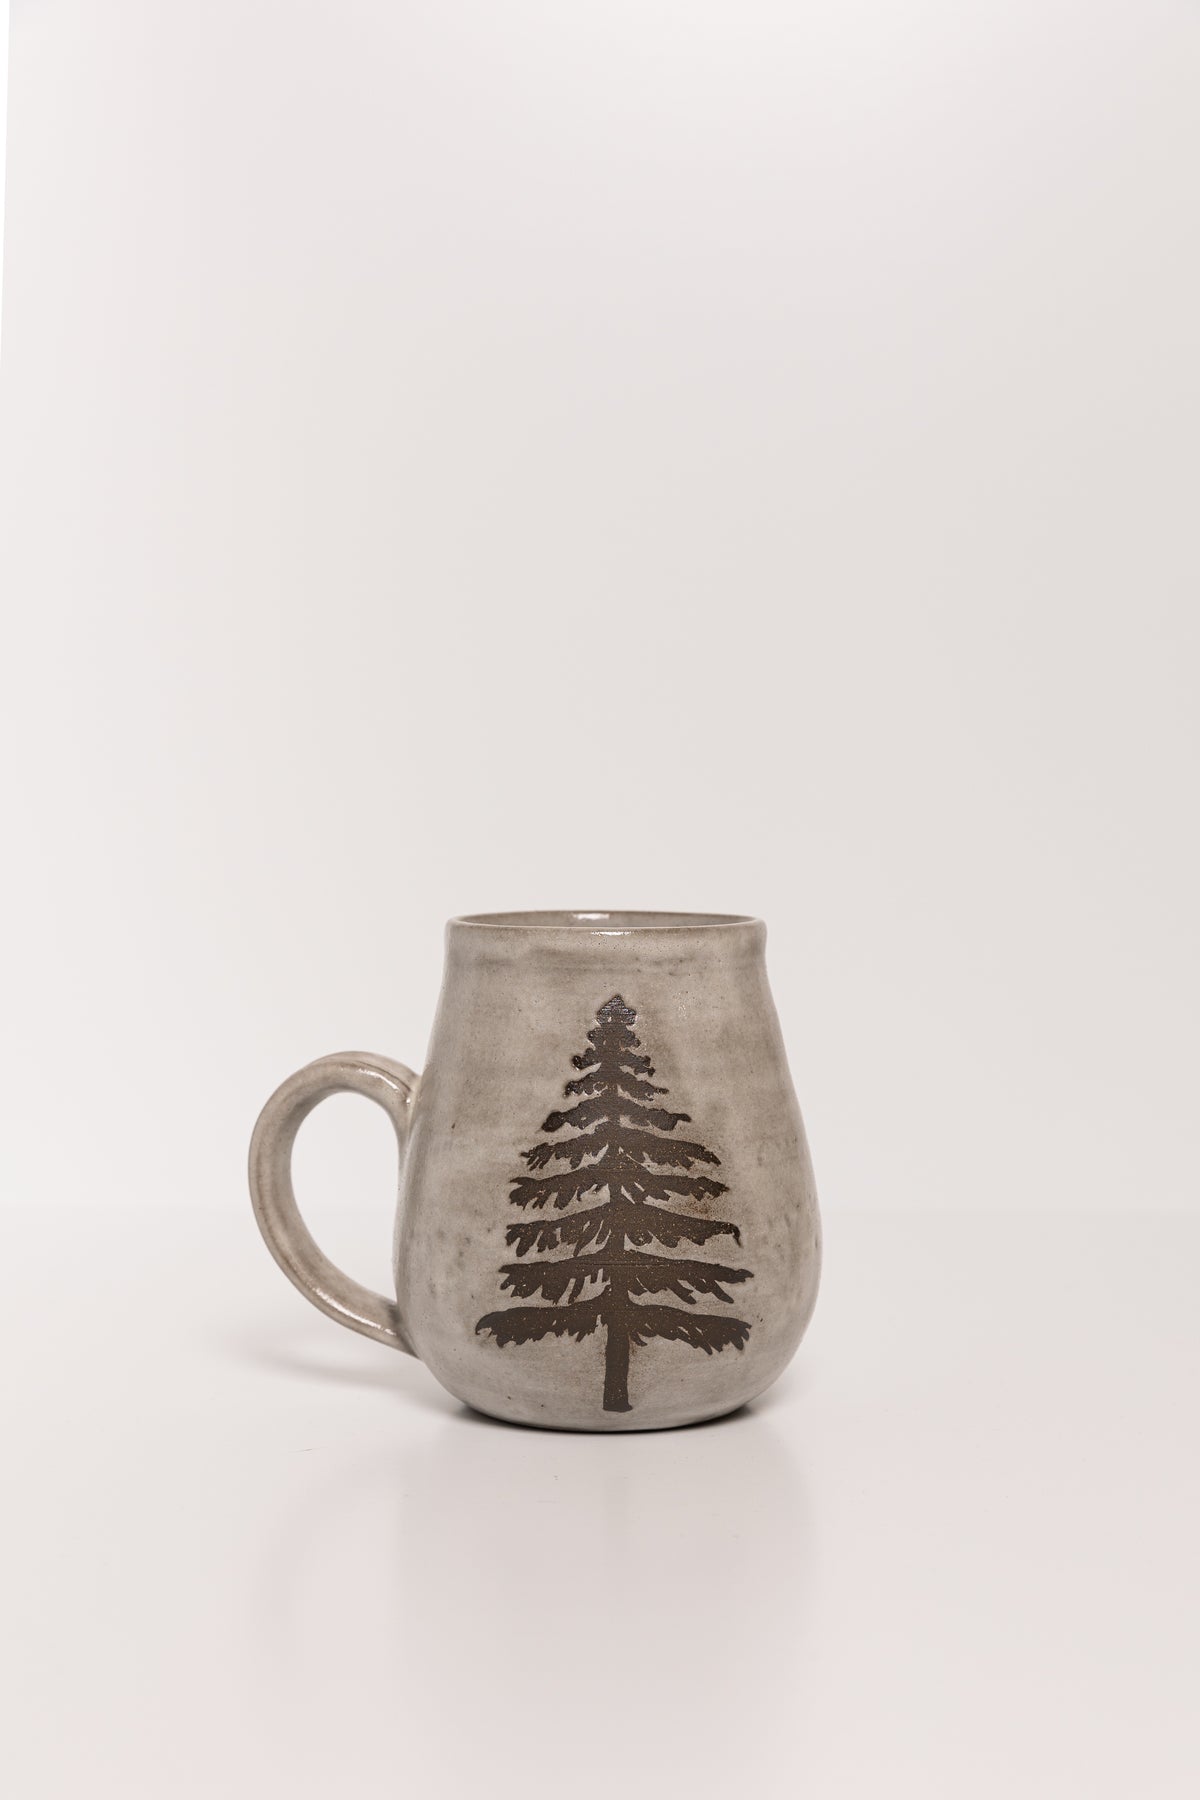 Hand Crafted - Winter Wonderland Mugs